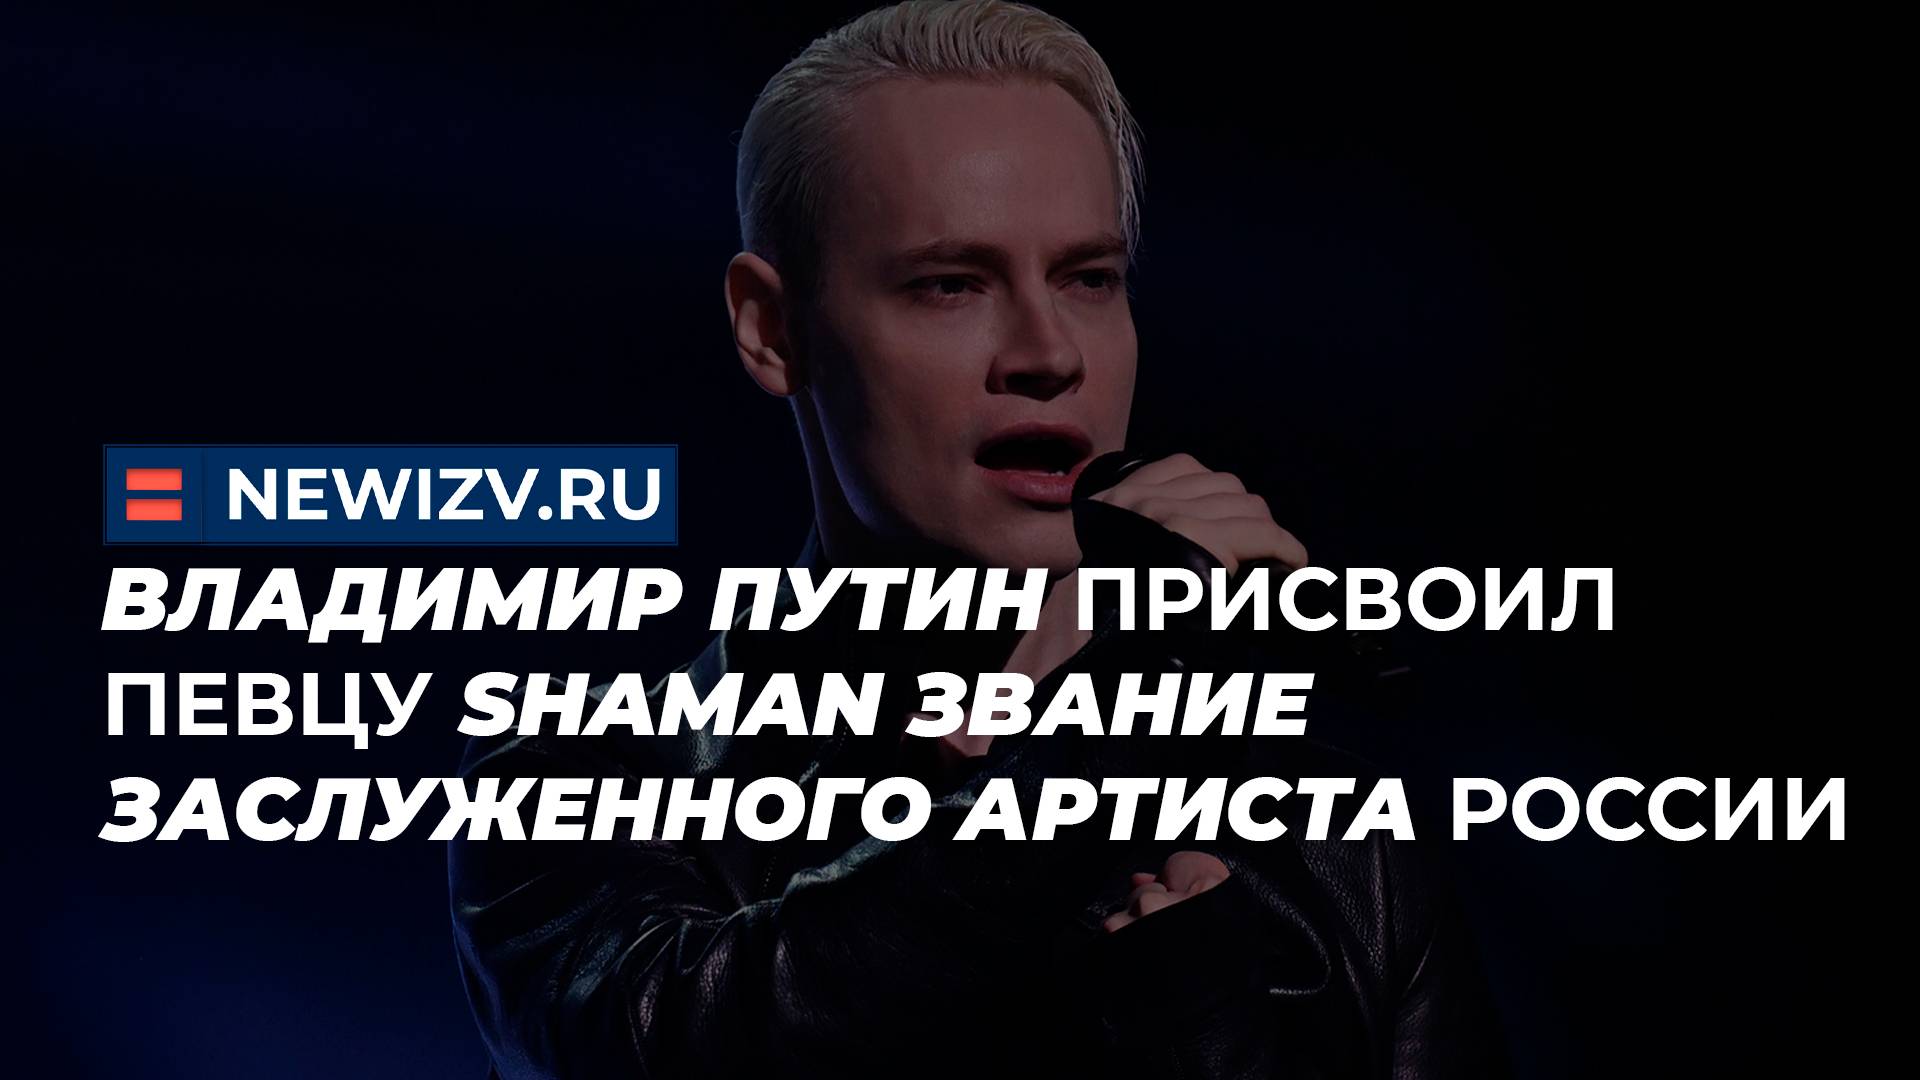 Владимир Путин присвоил певцу Shaman звание заслуженного артиста России